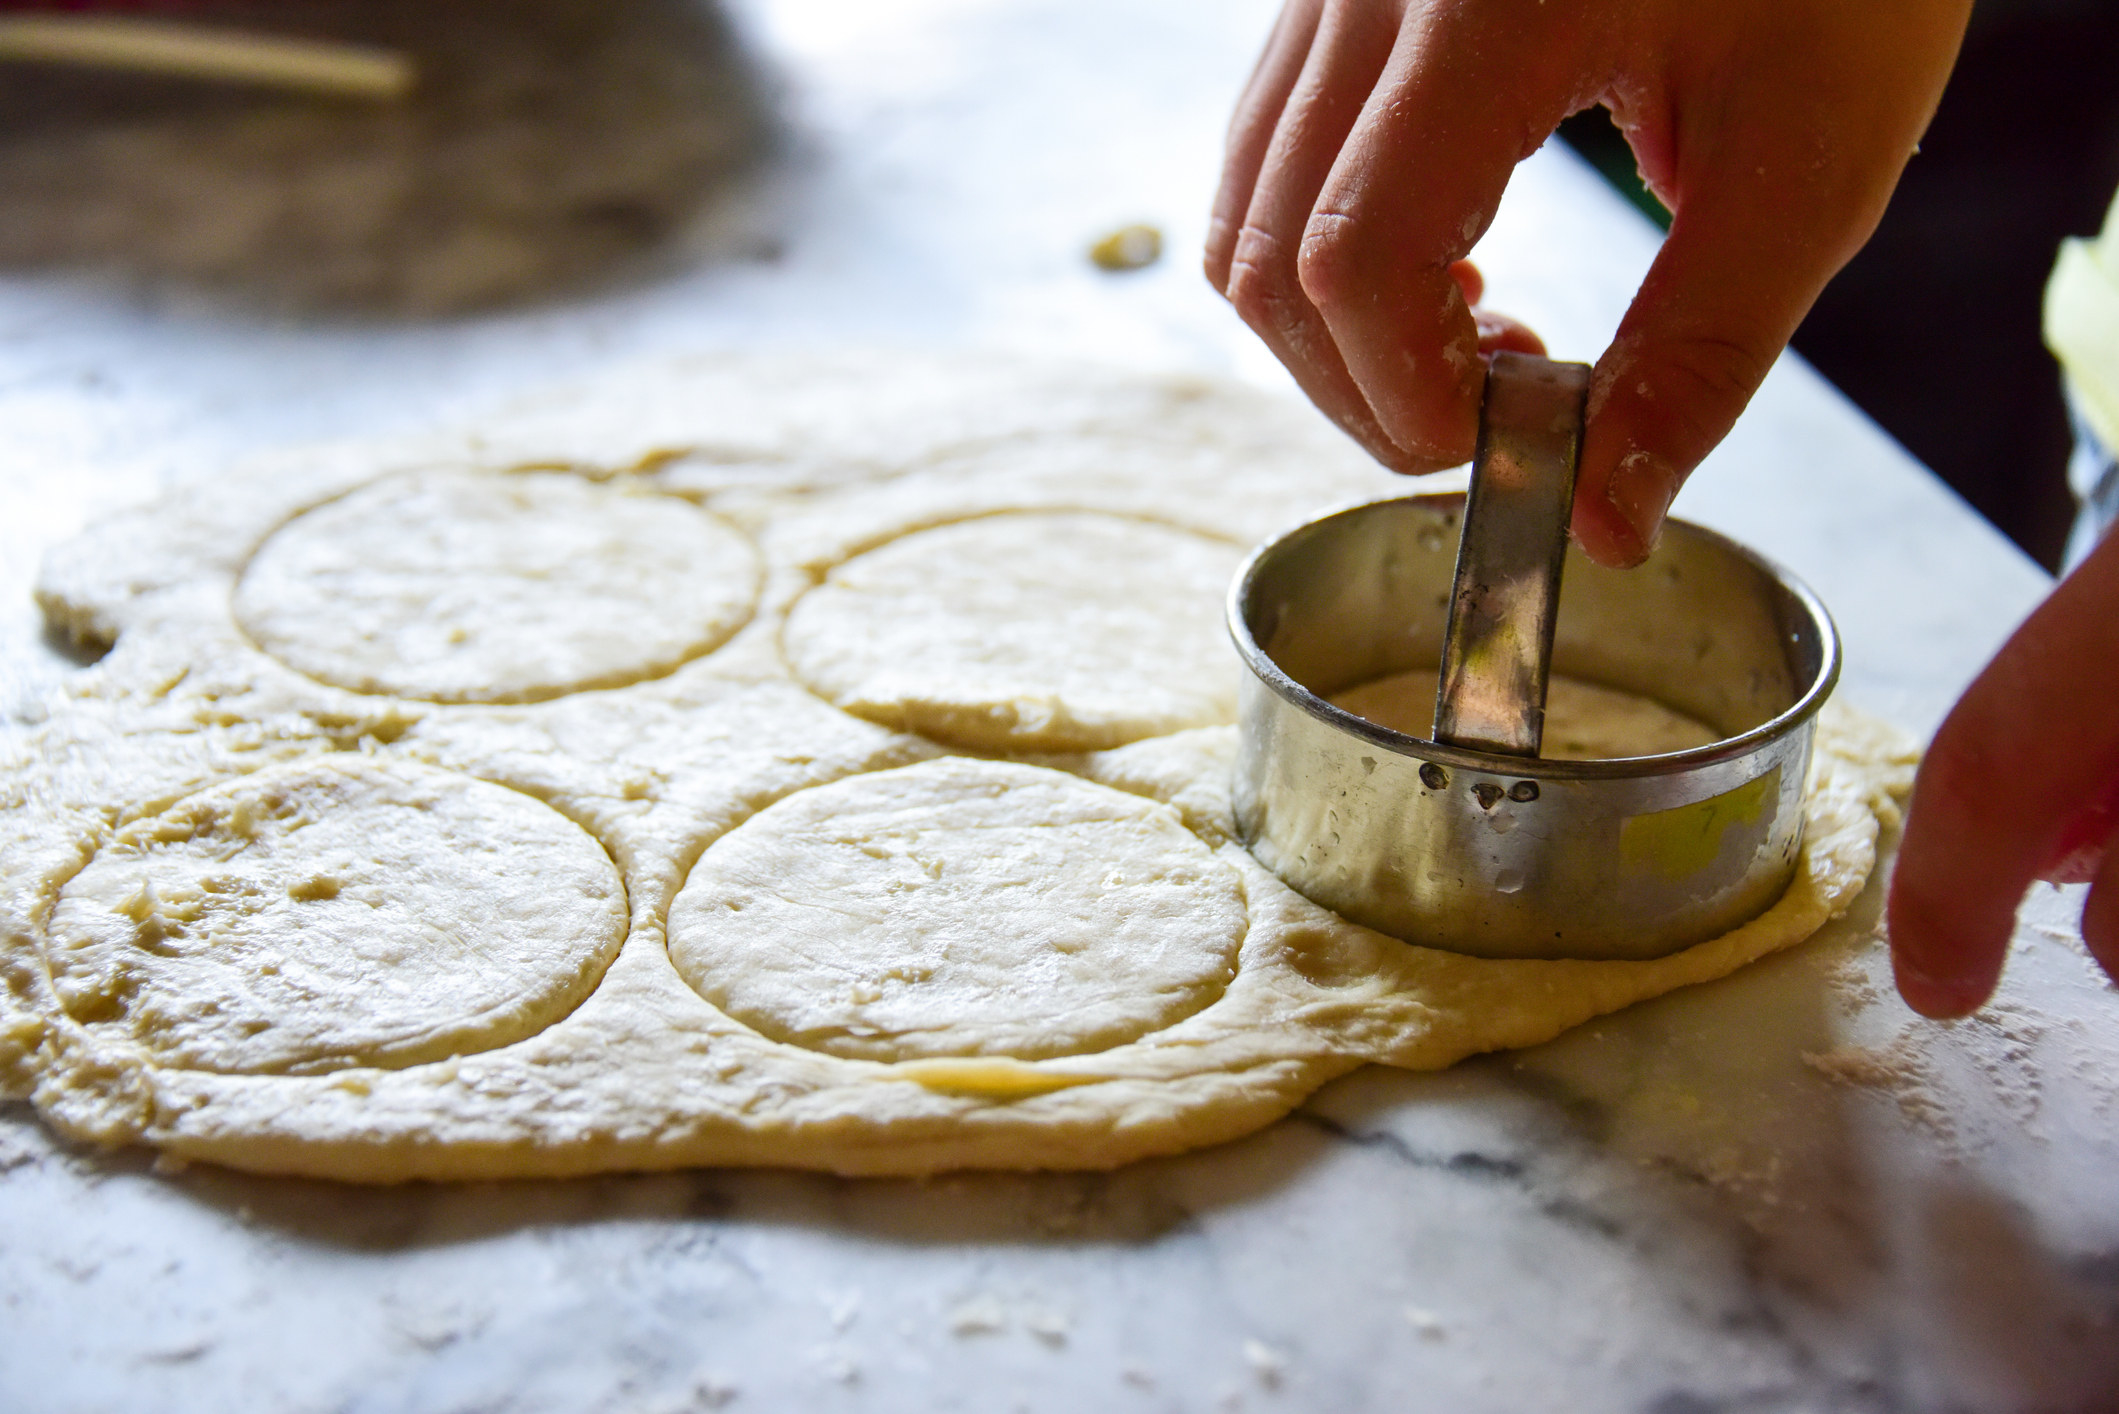 Cutting sugar cookie dough.